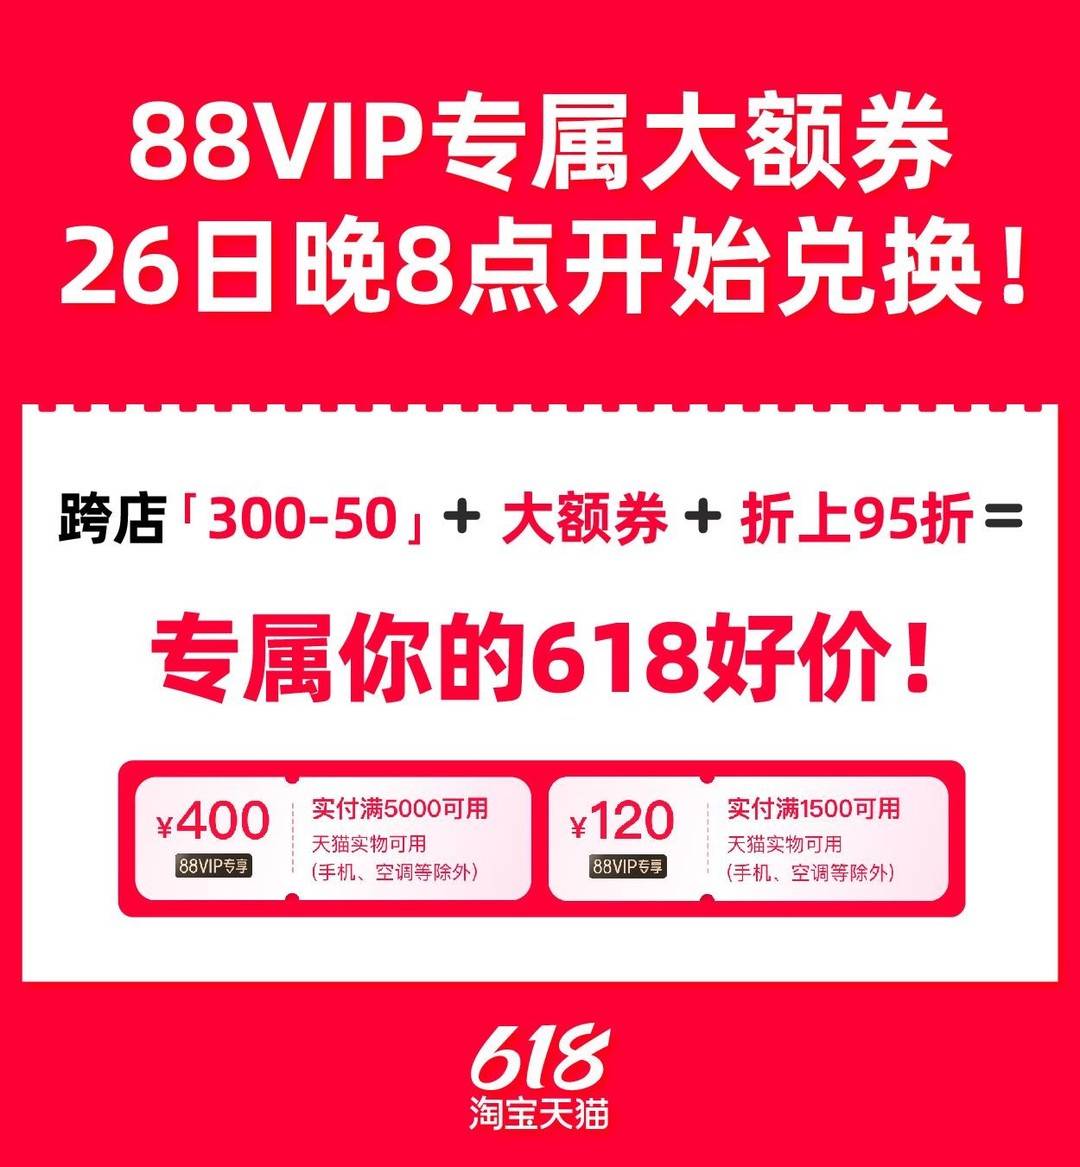 88VIP淘宝天猫618发放520元大额券，另有苹果官方补贴券可申领